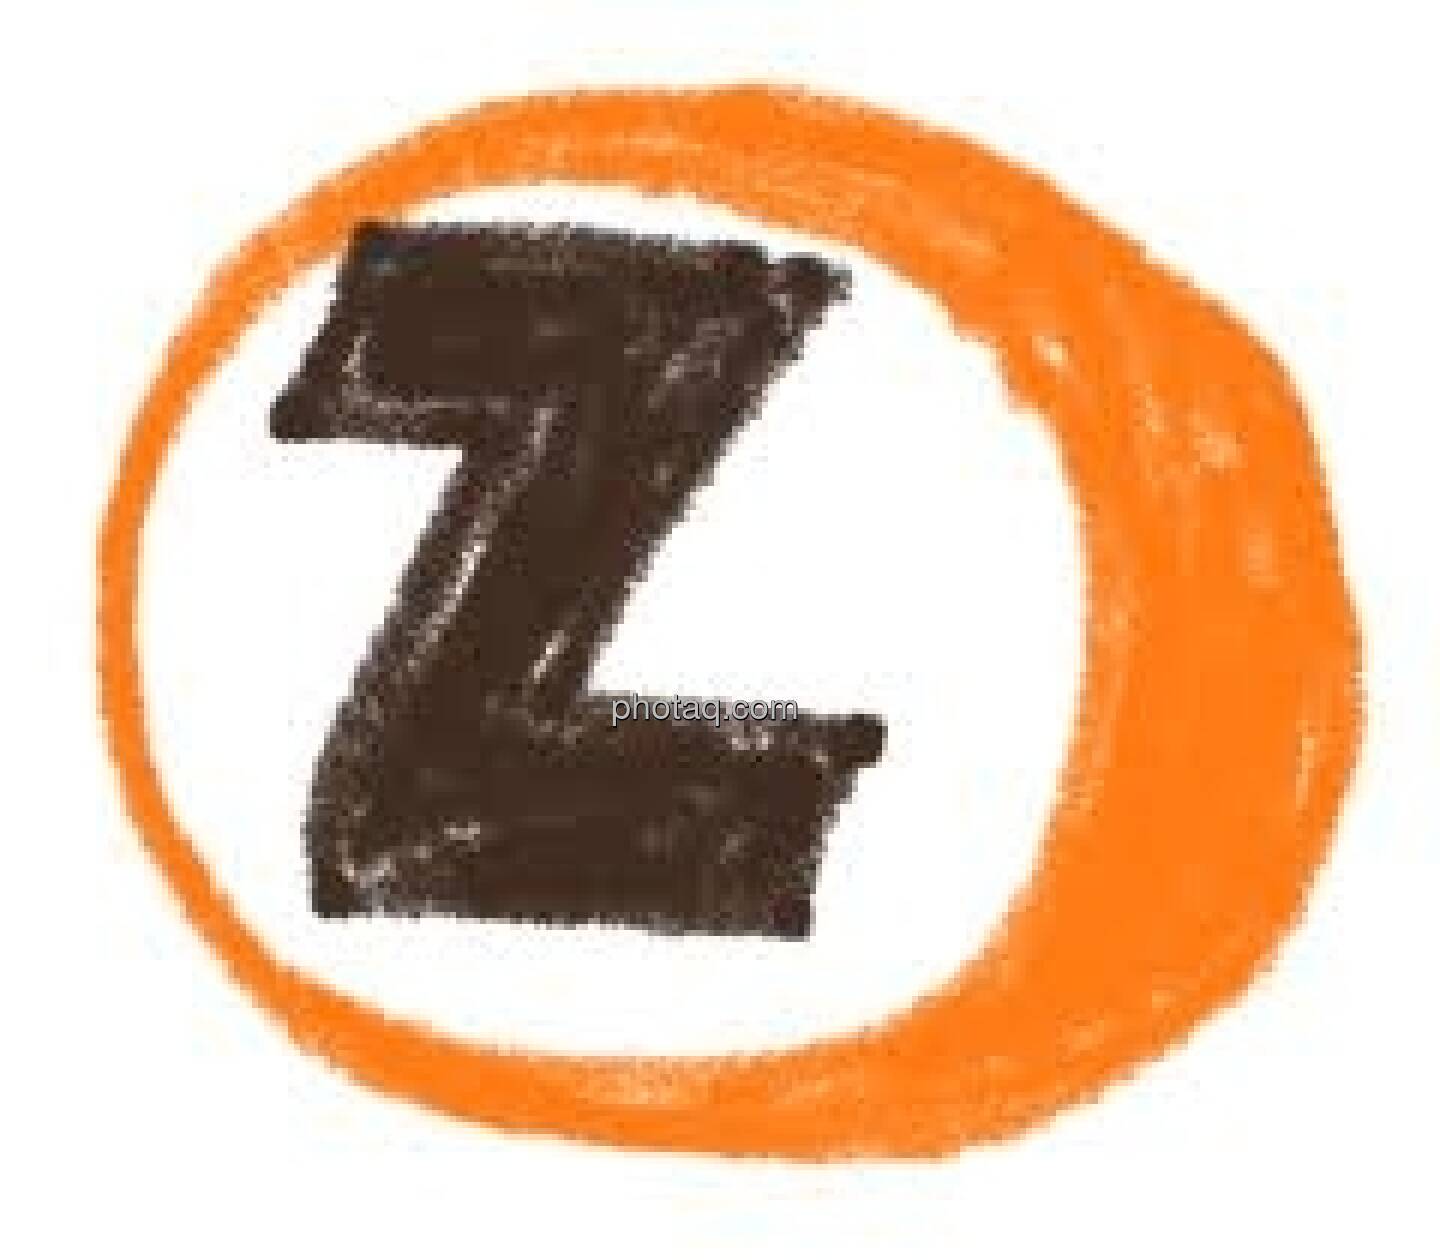 Z-Kugel für http://www.christian-drastil.com/2012/01/10/25-jahre-investment-von-der-z-zur-unicredit-eine-performance-annaherung/